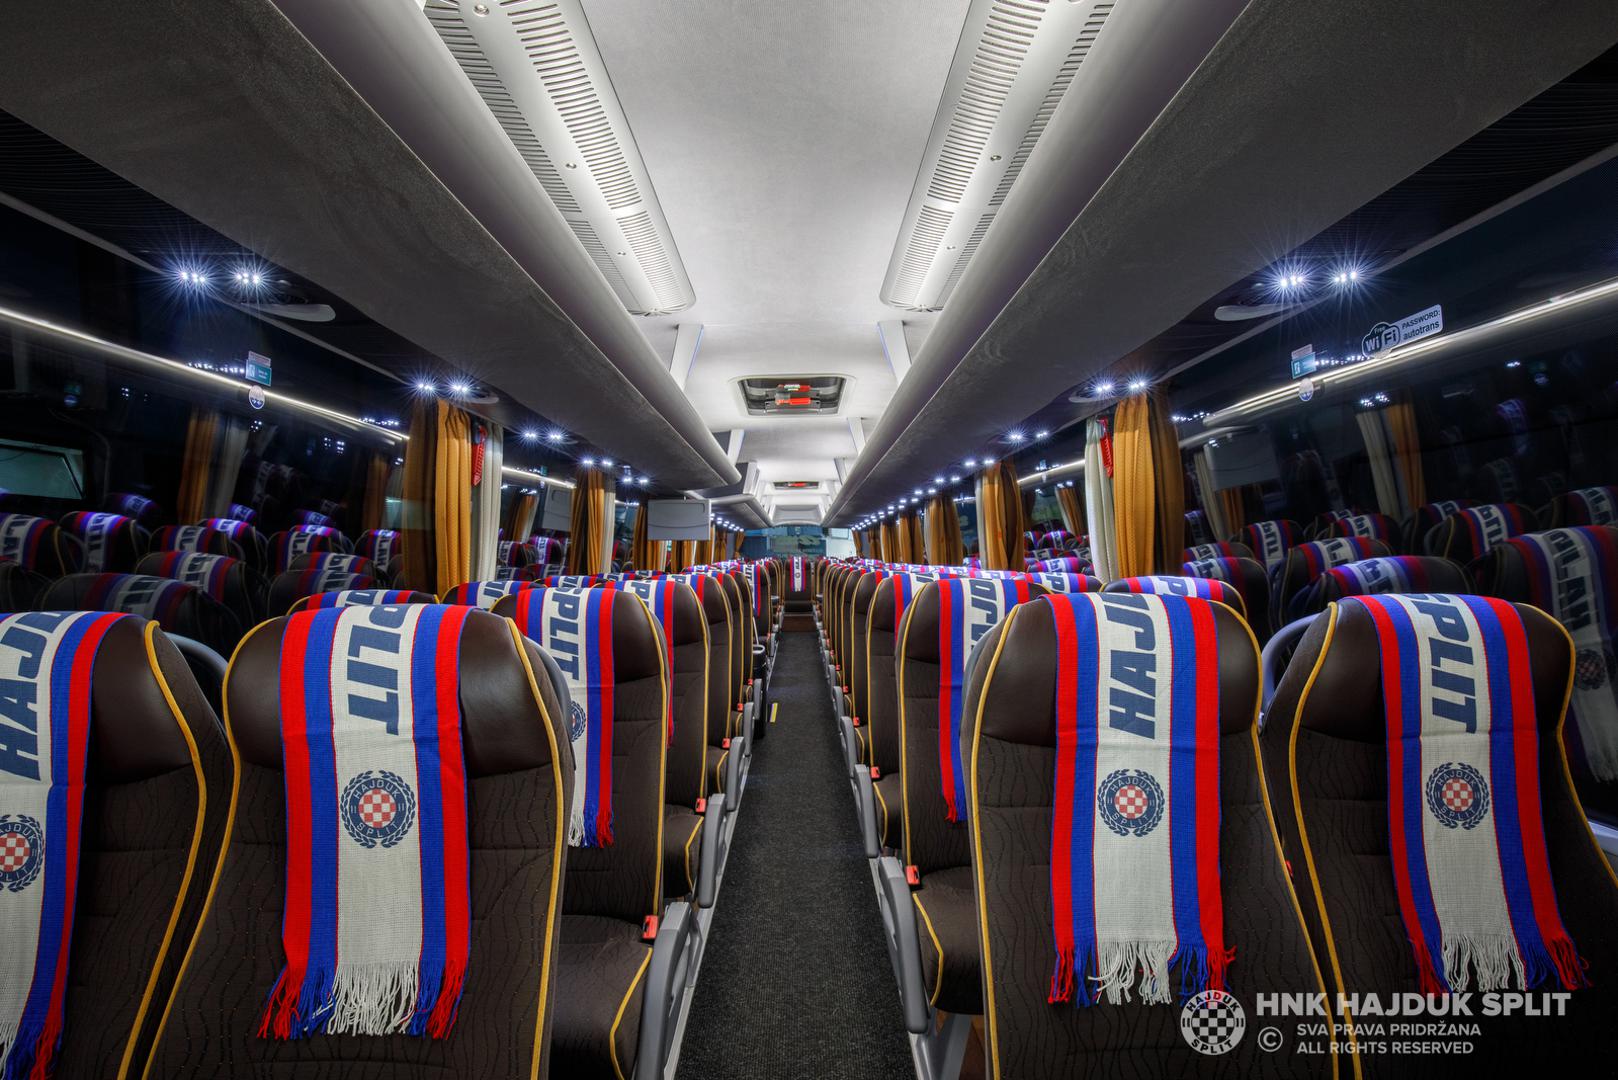 Autotrans je autobus marke MAN modela Lion's Coach L, koji je izrađen po najvišim standardima, prilagodio potrebama HNK Hajduk, a cijeli eksterijer odiše klupskim bojama i vizualima.